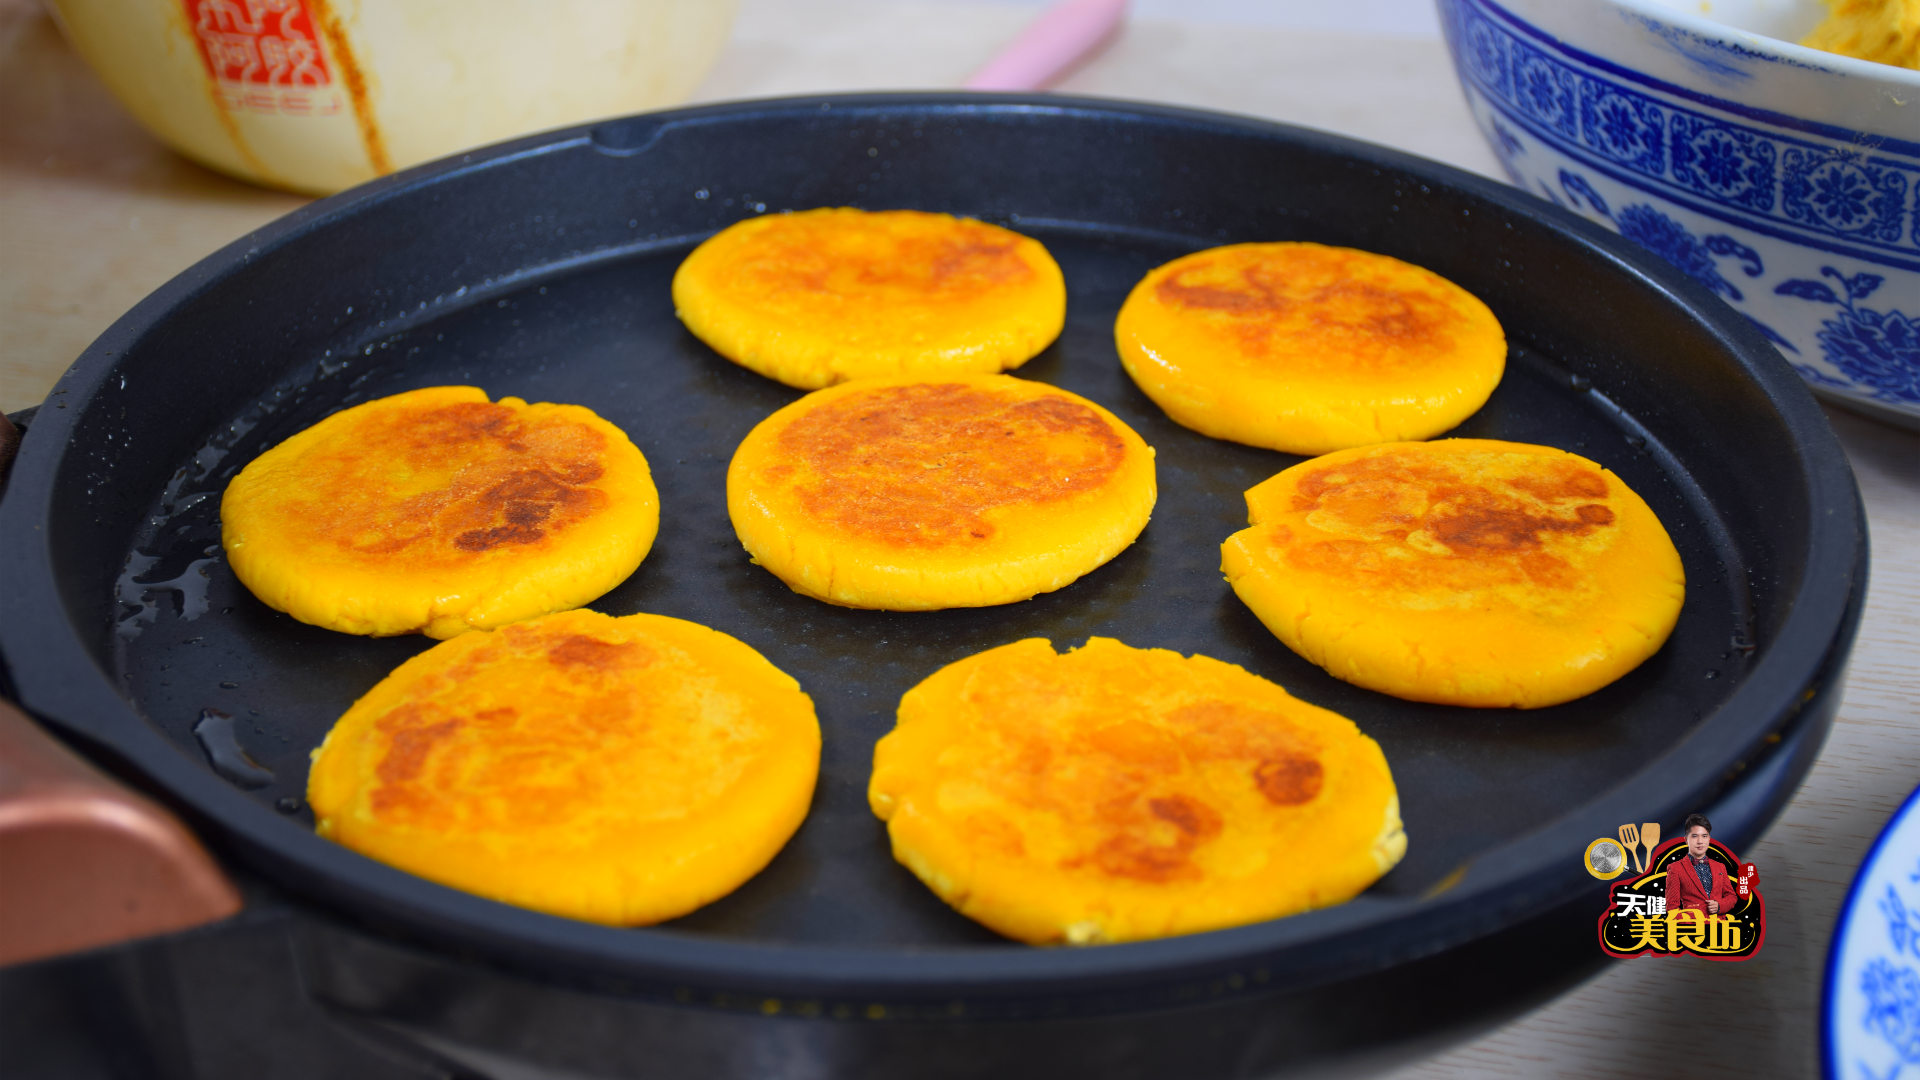 南瓜饼的做法 ，步骤和配料都很简单，厨房小白也能学会